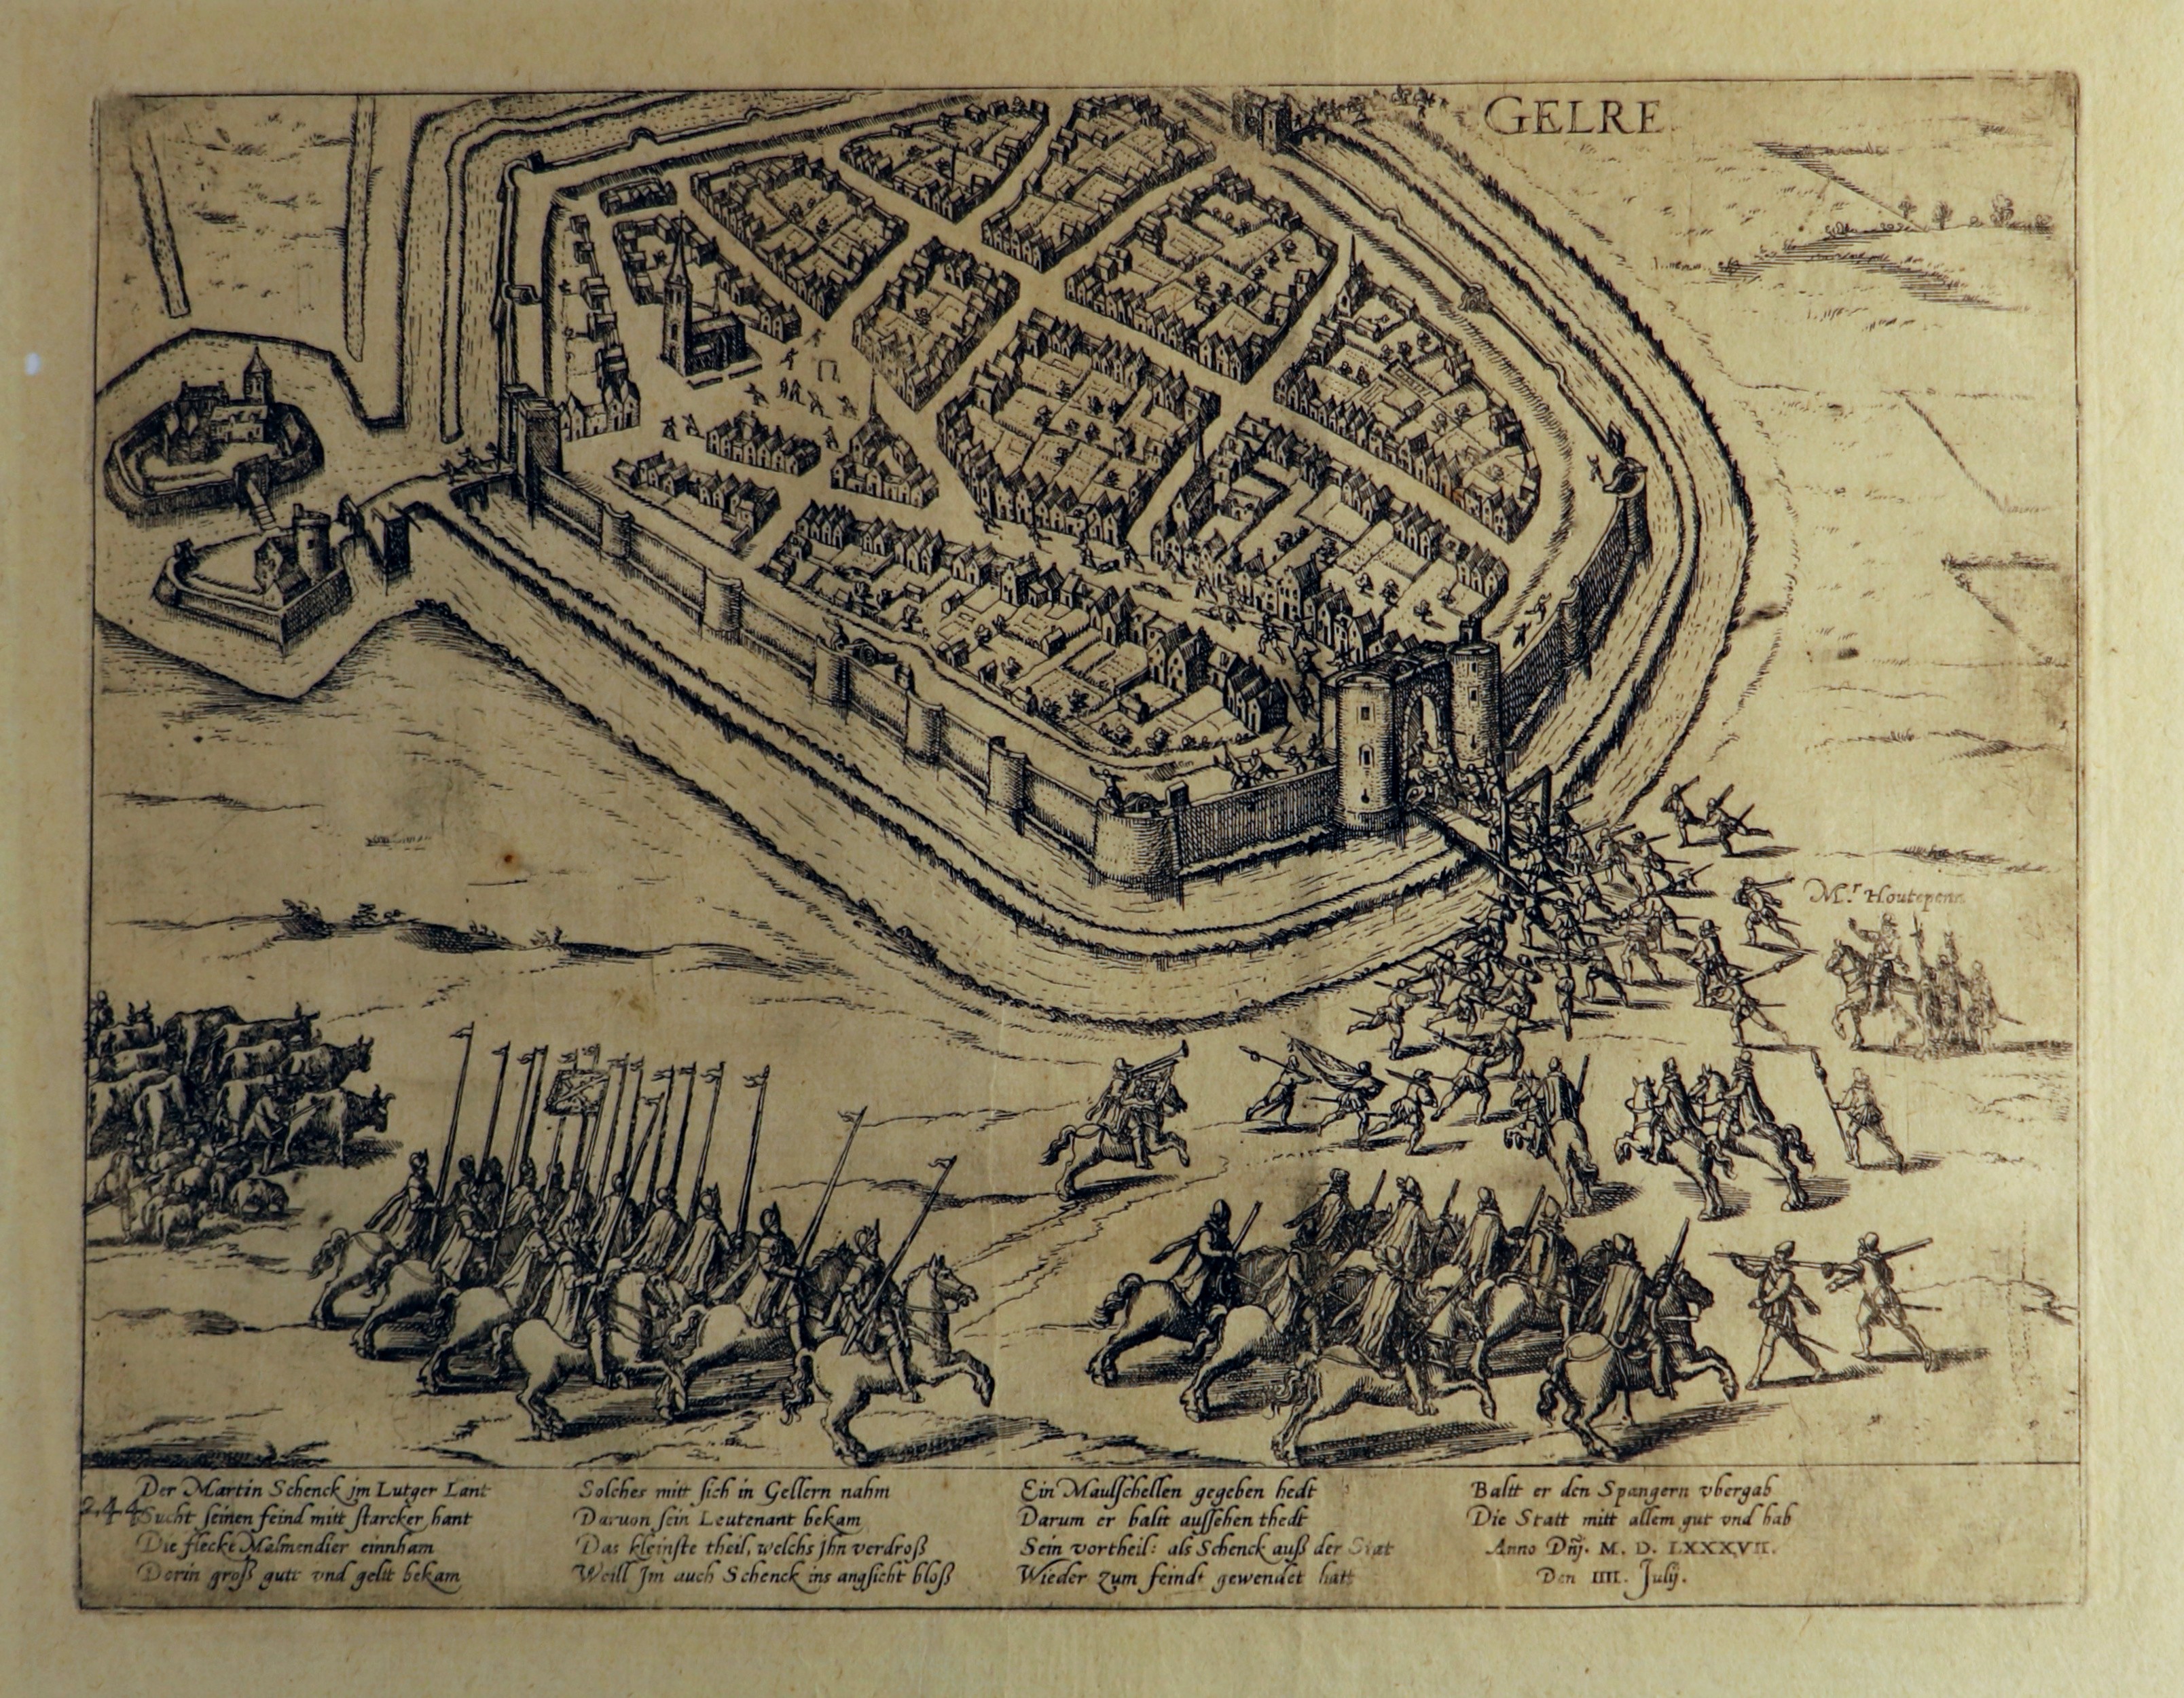 Kupferstich zur Eroberung von Geldern durch die Spanier nach Verrat, 4. Juli 1587 (Hogenberg) (Städtisches Museum Schloss Rheydt CC BY)